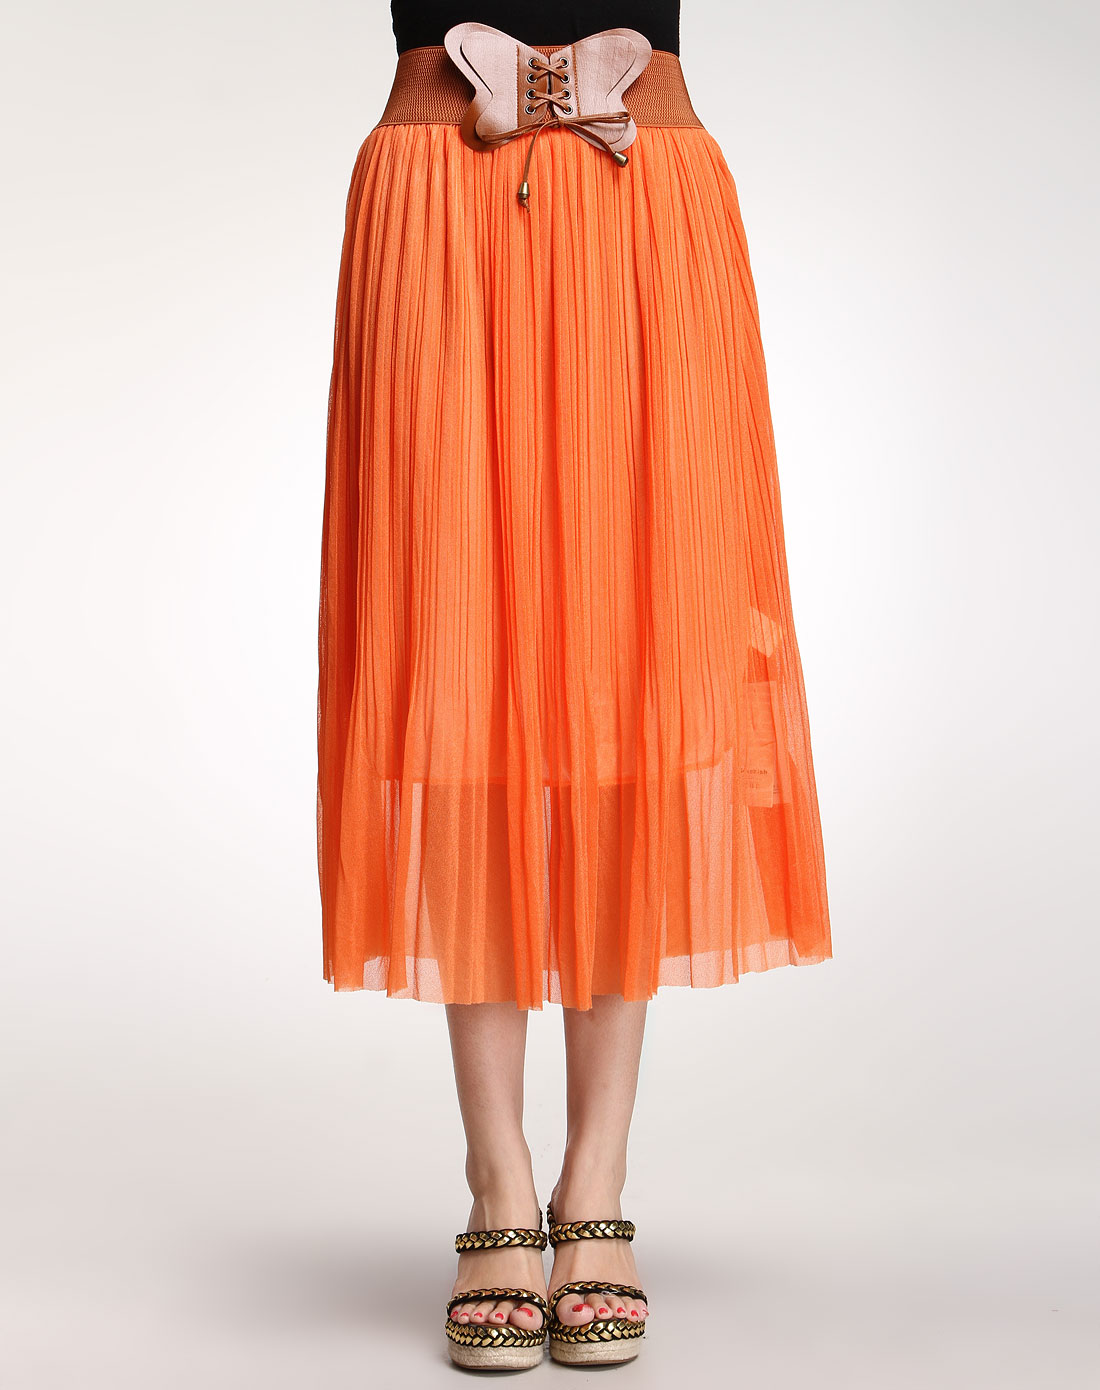 全世界最漂亮的裙子,女装衣服品牌,橙色跟什么